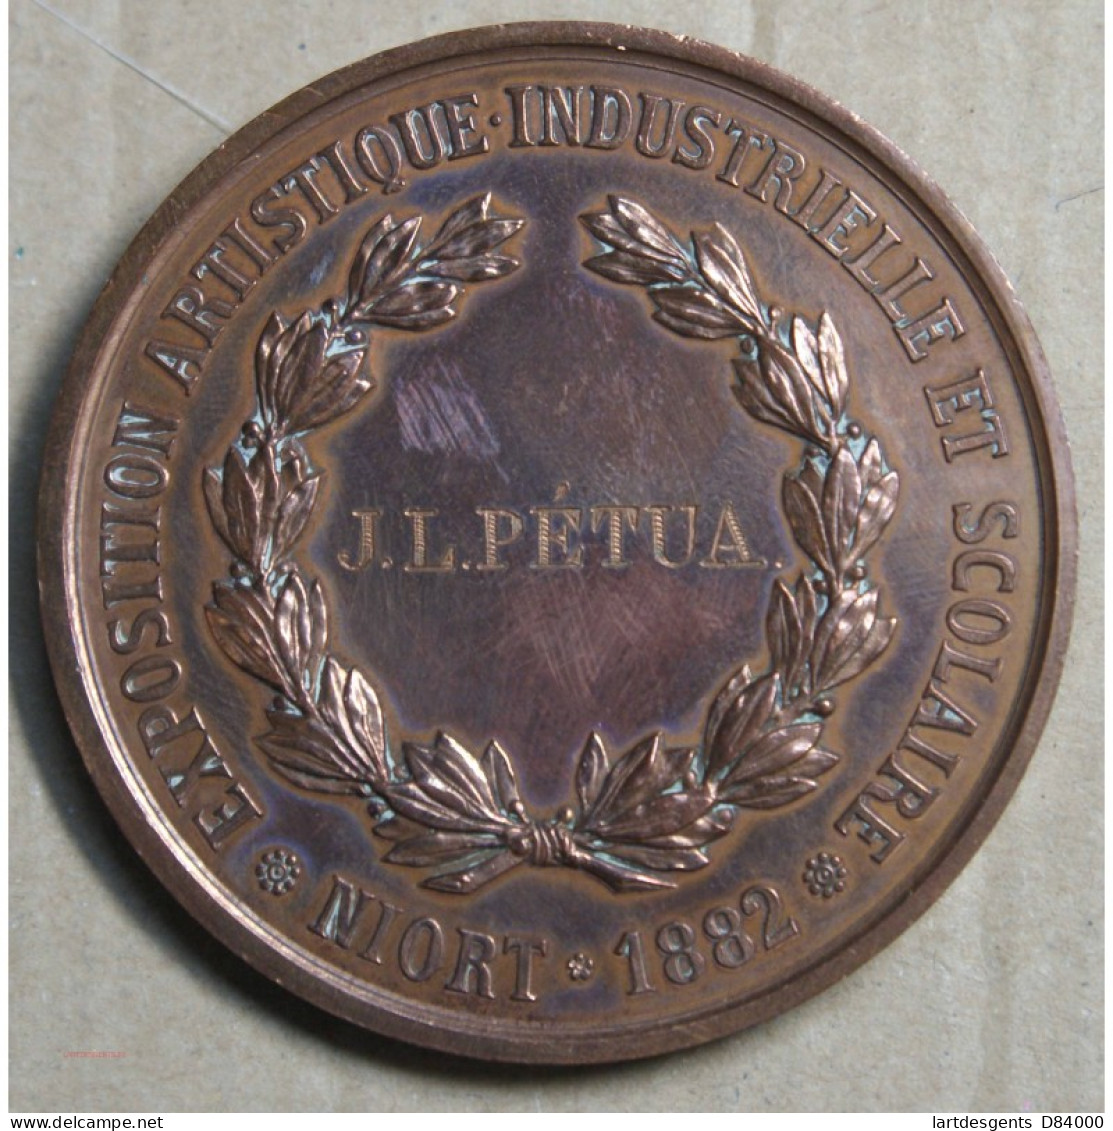 Médaille Exposition Industrielle Et Scolaire, Niort 1882 J.L. Pétua(8), Lartdesgents.fr - Royal / Of Nobility